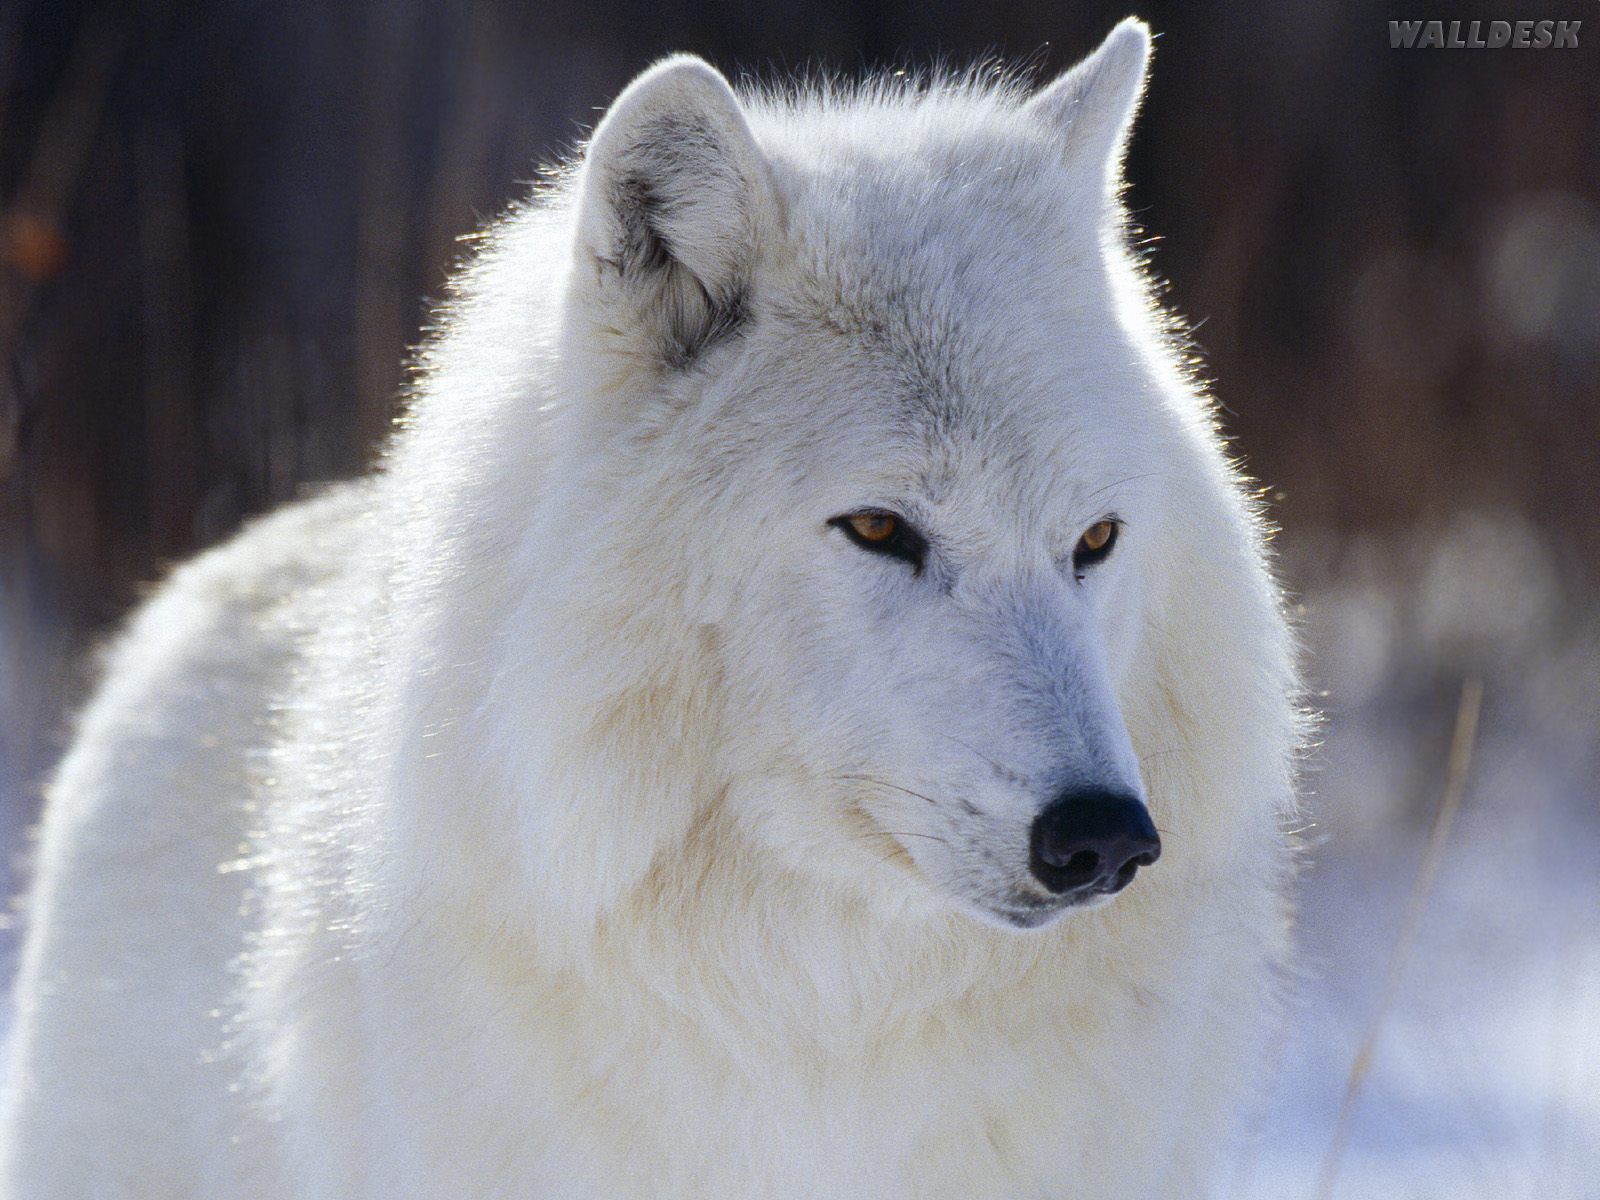 fond d'écran de renard blanc,canis lupus tundrarum,blanc,loup,faune,le renard arctique